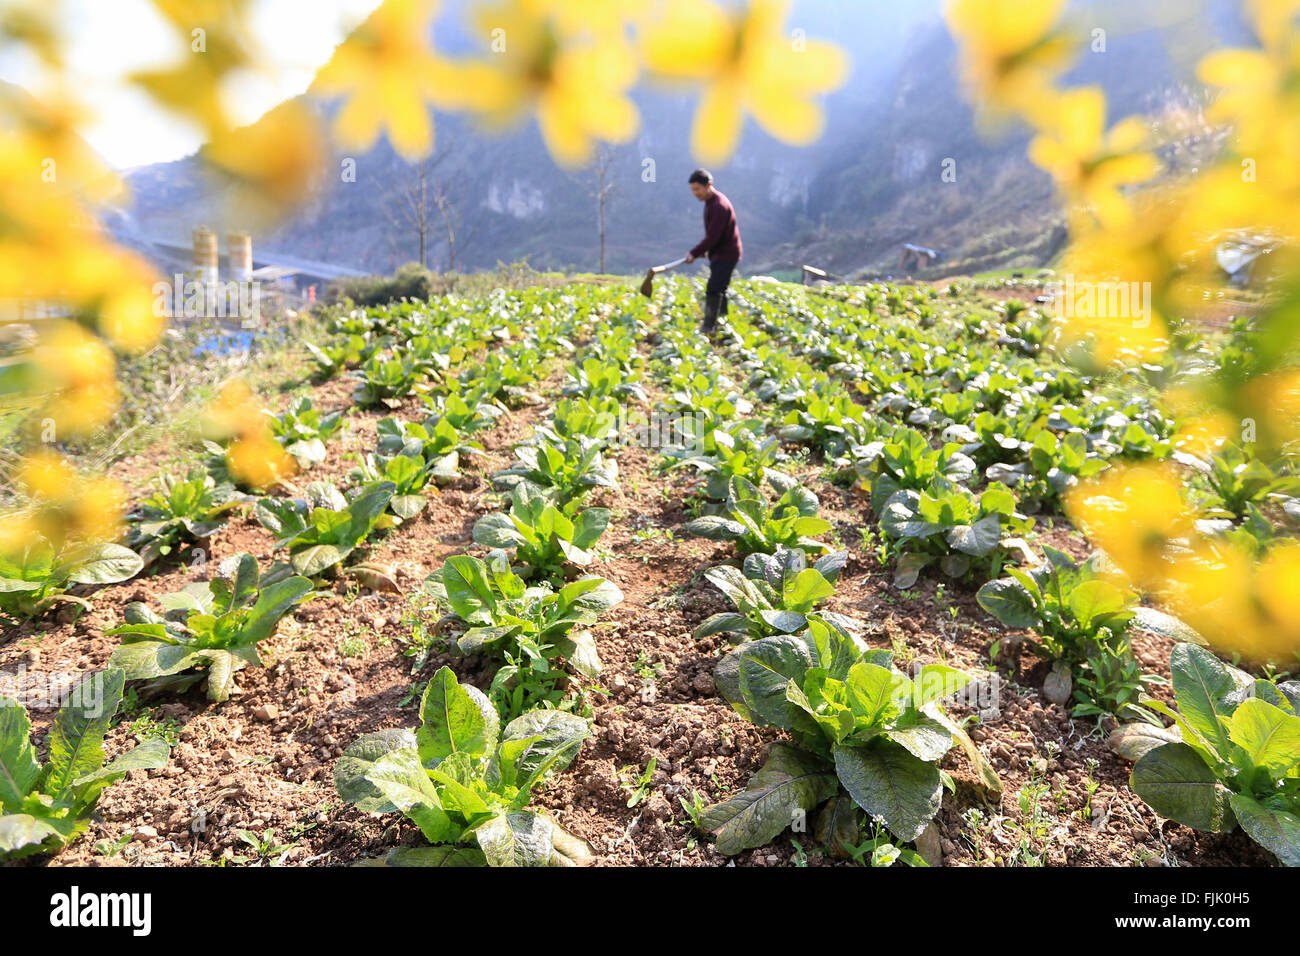 Qiandongnan. 1 de Mar, 2016. Un agricultor trabaja en los campos de Yuangu Township, en el suroeste de la provincia de Guizhou en China, 1 de marzo de 2016. La primavera regresa a la tierra como el clima mejore. © Wu Jibin/Xinhua/Alamy Live News Foto de stock